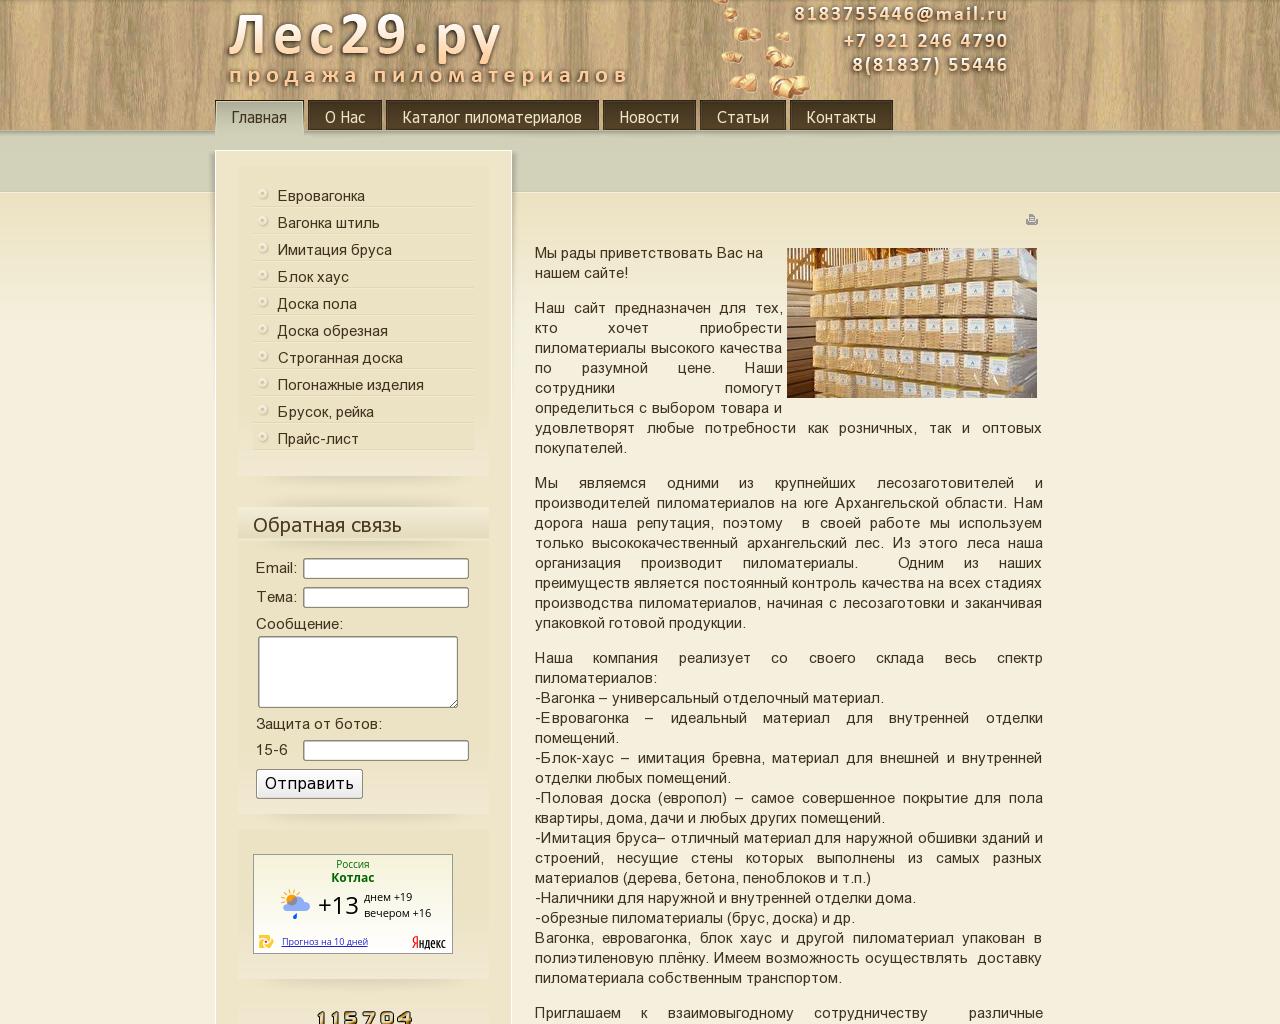 Изображение сайта les29.ru в разрешении 1280x1024